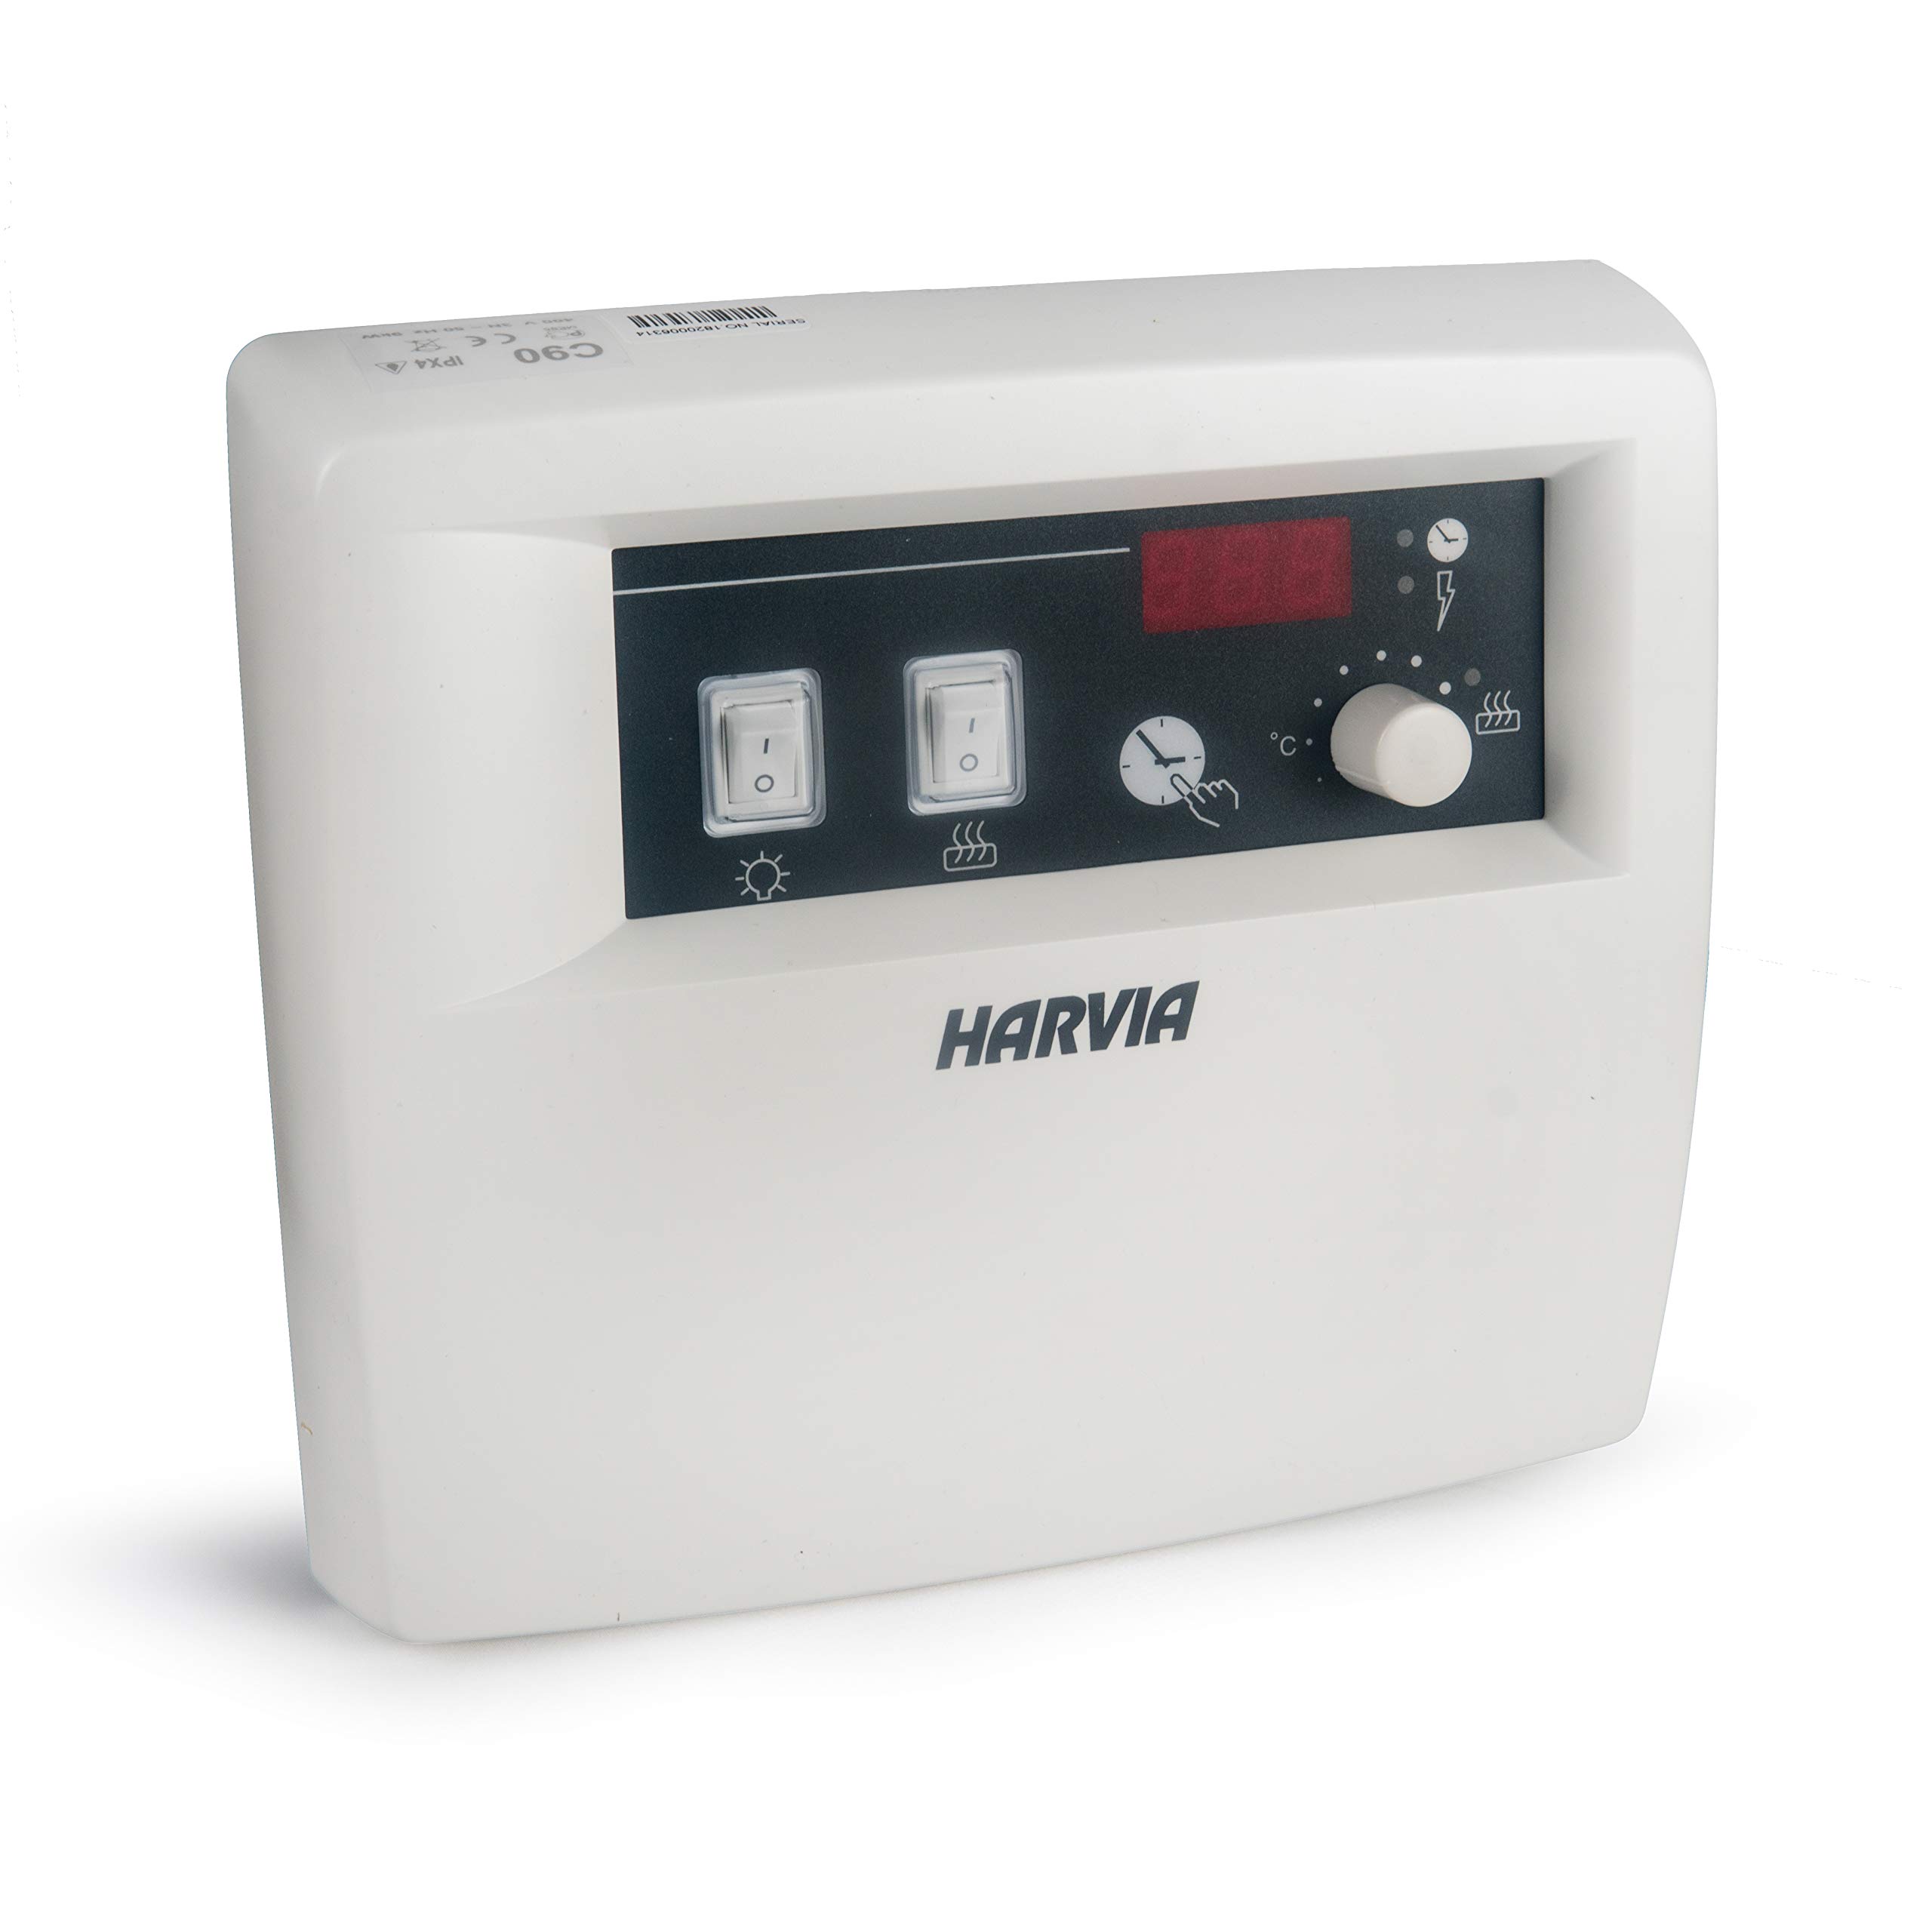 Harvia Saunasteuerung C150 für 3-17 kW Saunaöfen